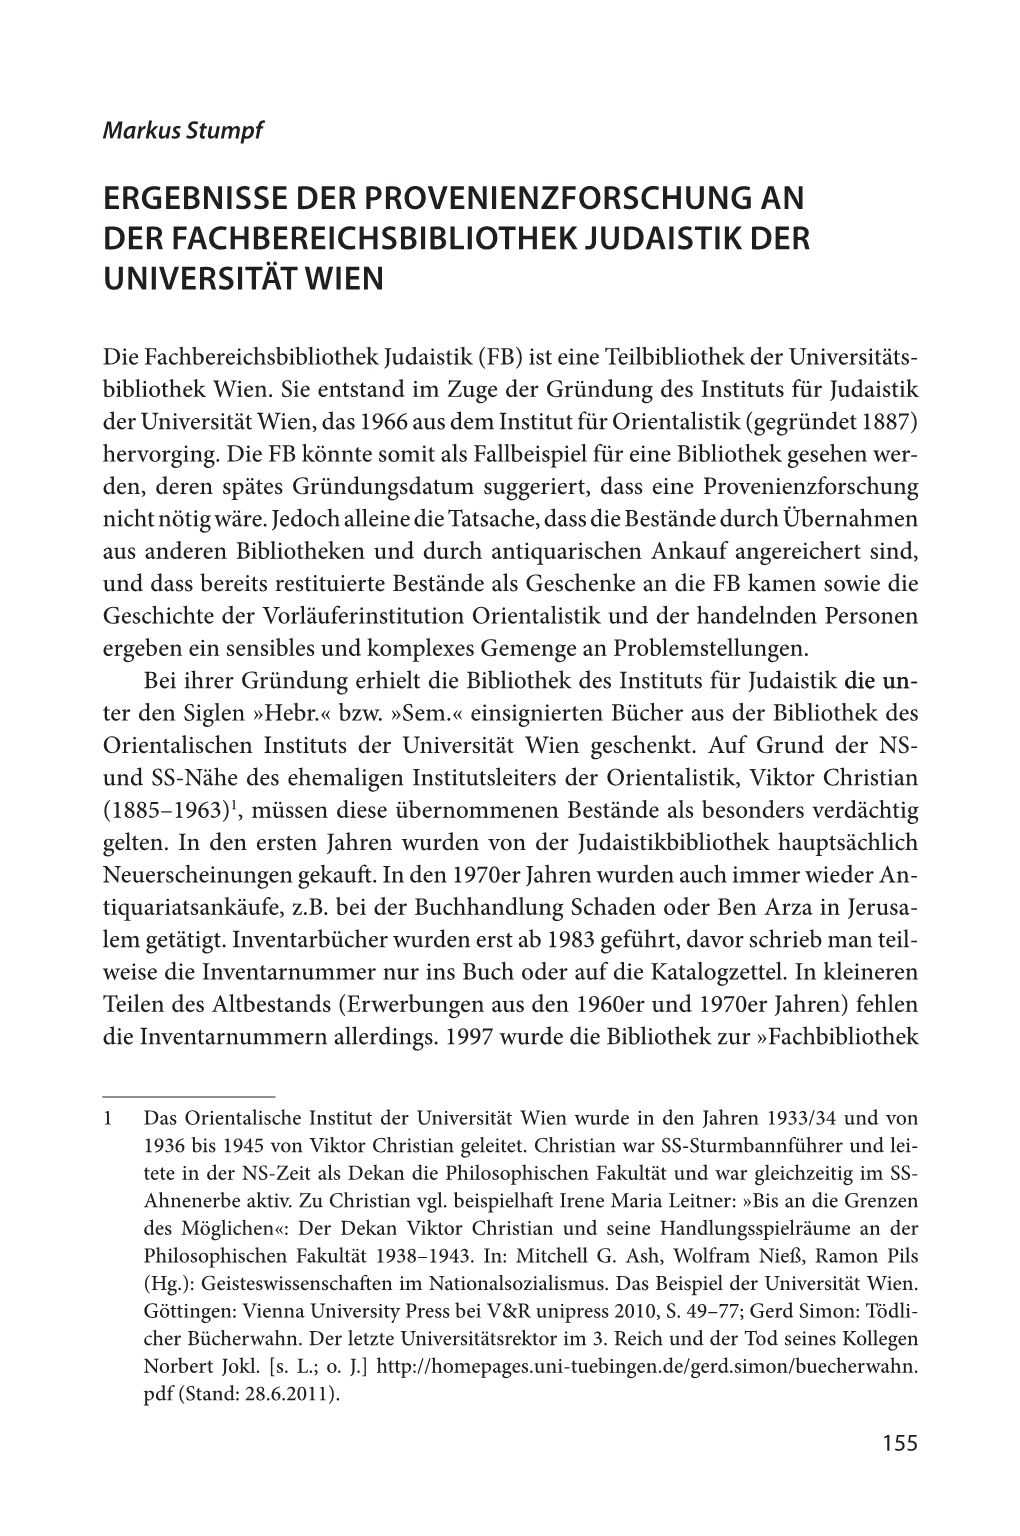 Ergebnisse Der Provenienzforschung an Der Fachbereichsbibliothek Judaistik Der Universität Wien